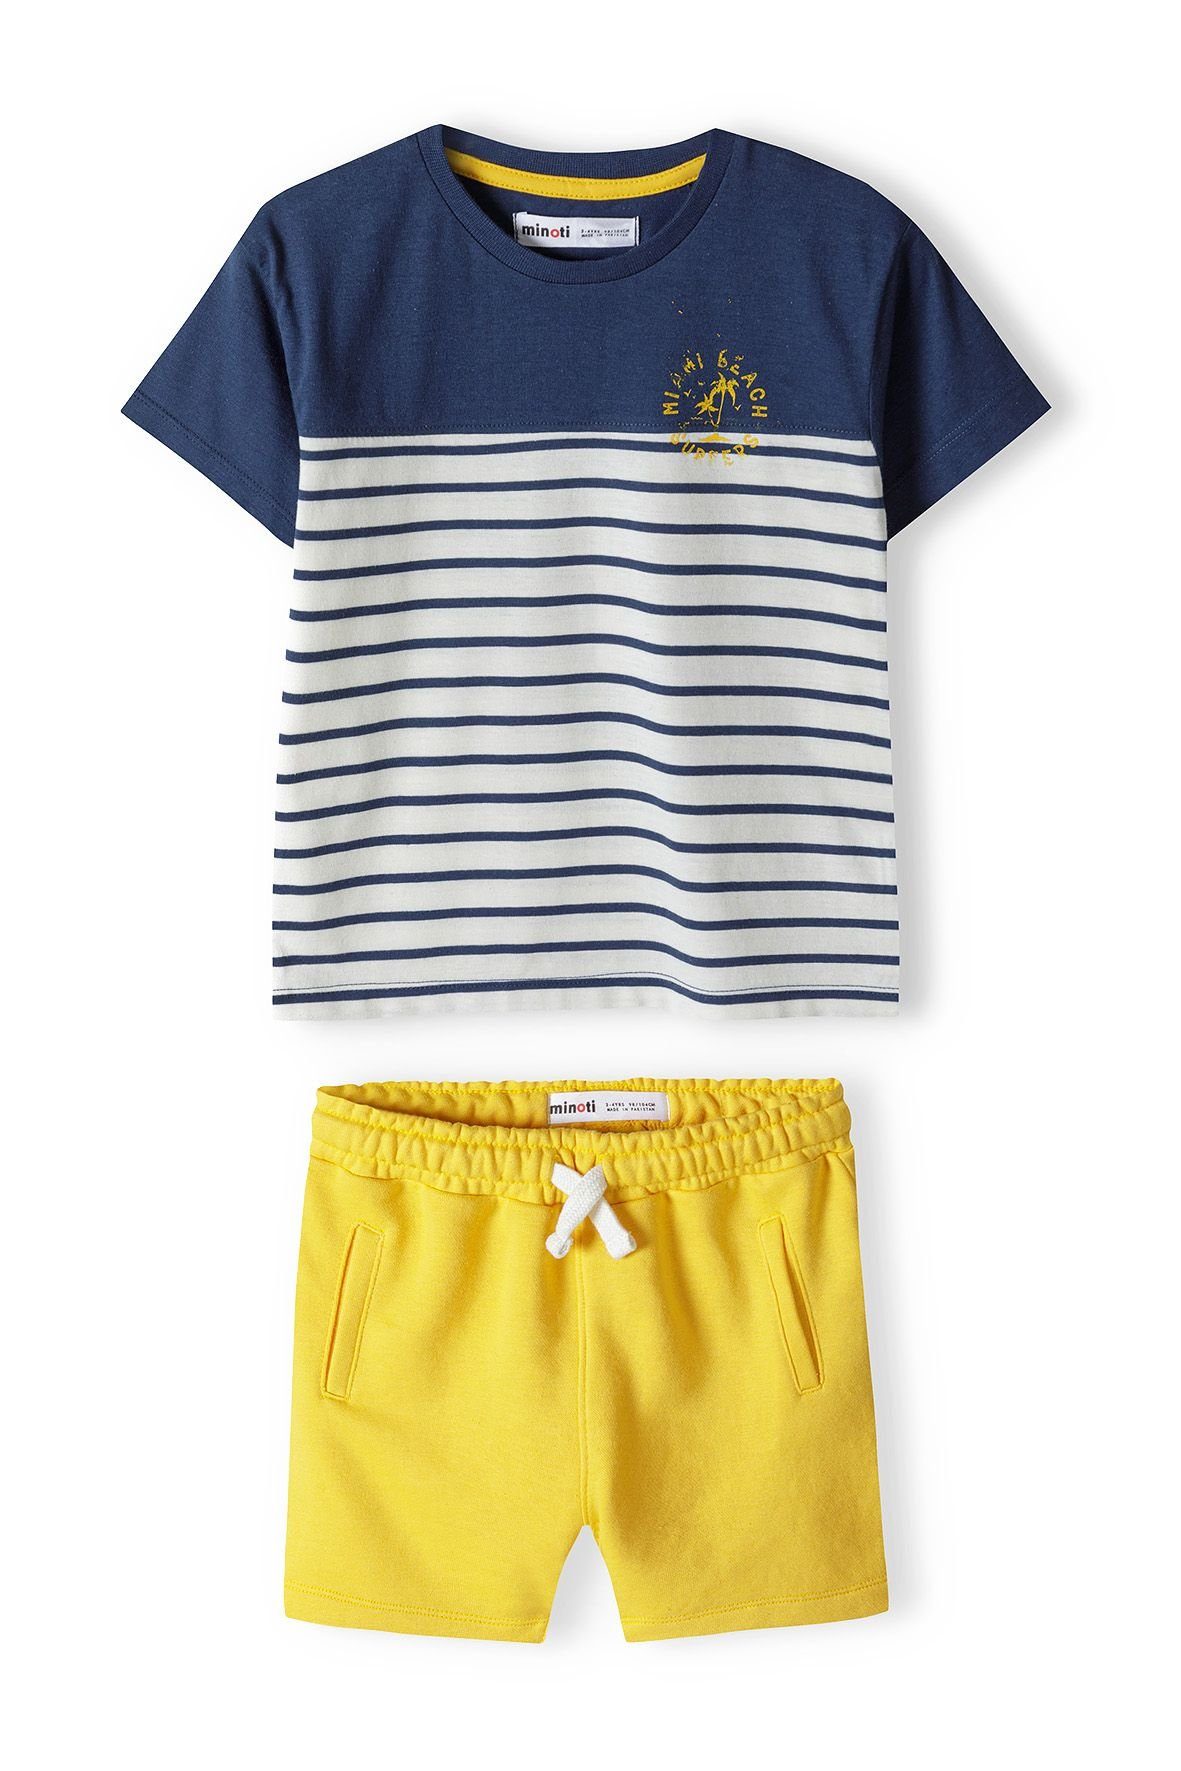 MINOTI T-Shirt & Sweatbermudas T-Shirt und Shorts Set (12m-8y) Gelb